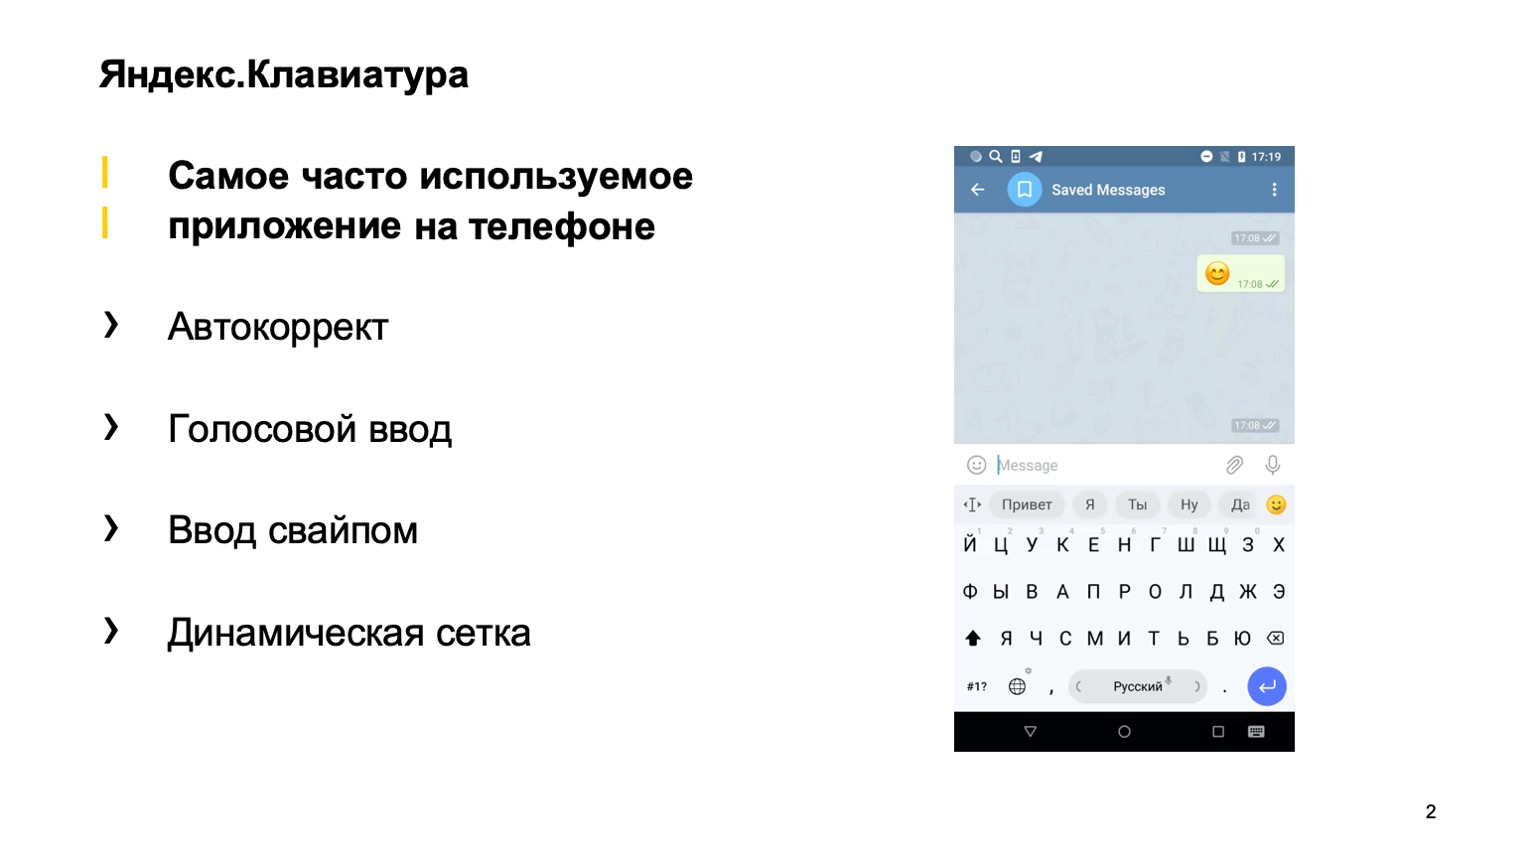 Какие навыки нужны для создания iOS-приложения? Доклад Яндекса - 3